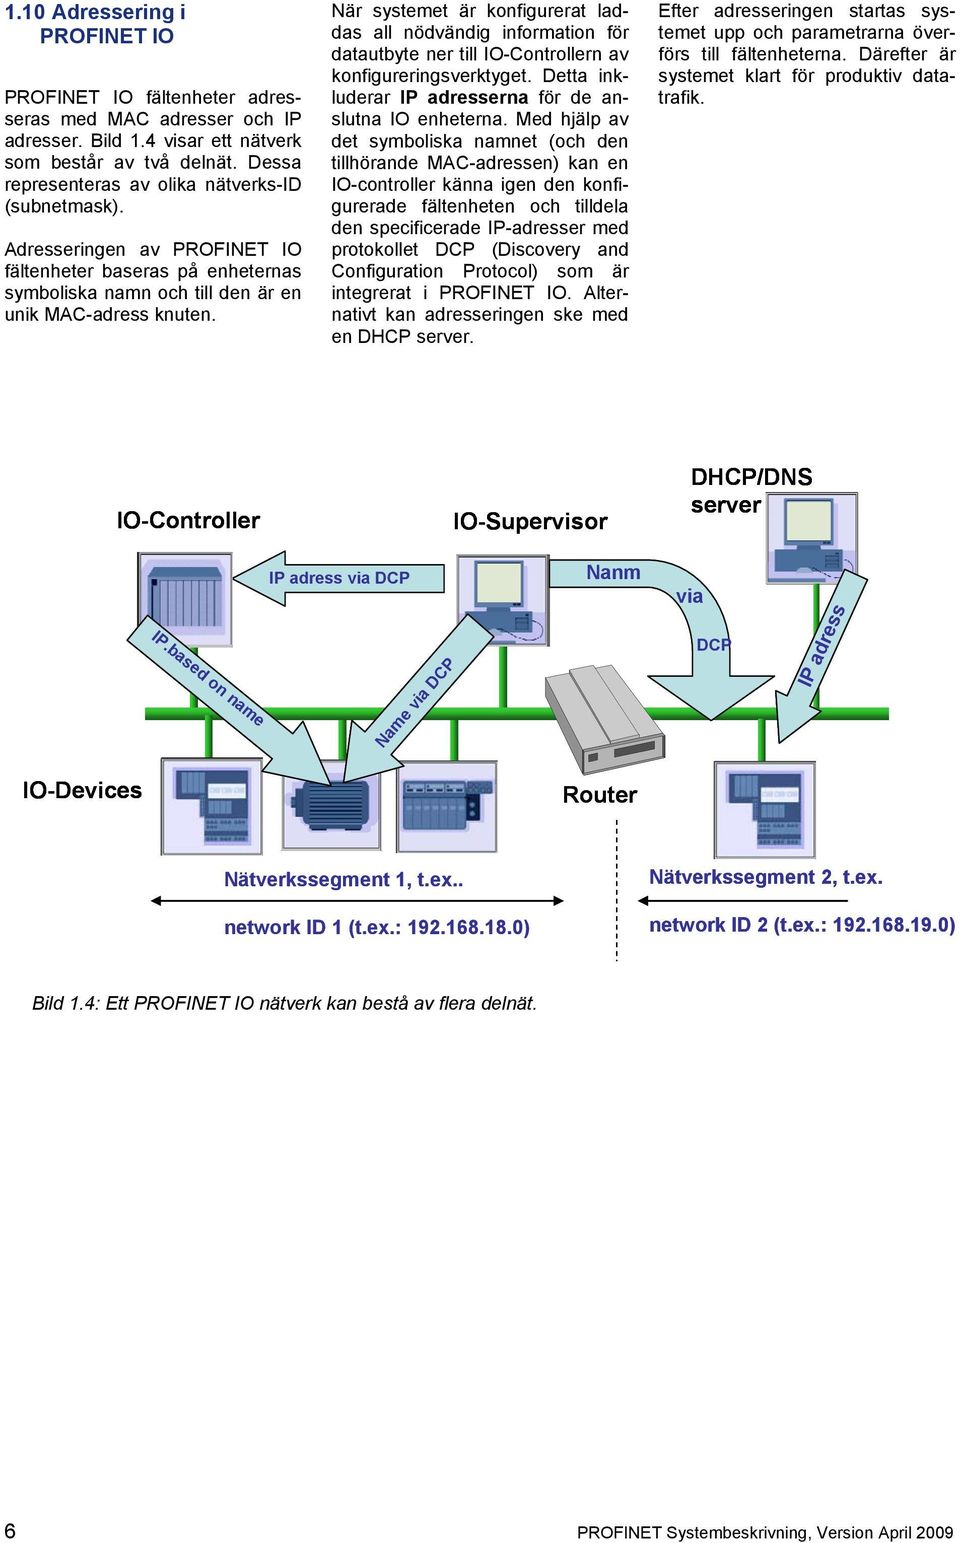 När systemet är konfigurerat laddas all nödvändig information för datautbyte ner till IO-Controllern av konfigureringsverktyget. Detta inkluderar IP adresserna för de anslutna IO enheterna.